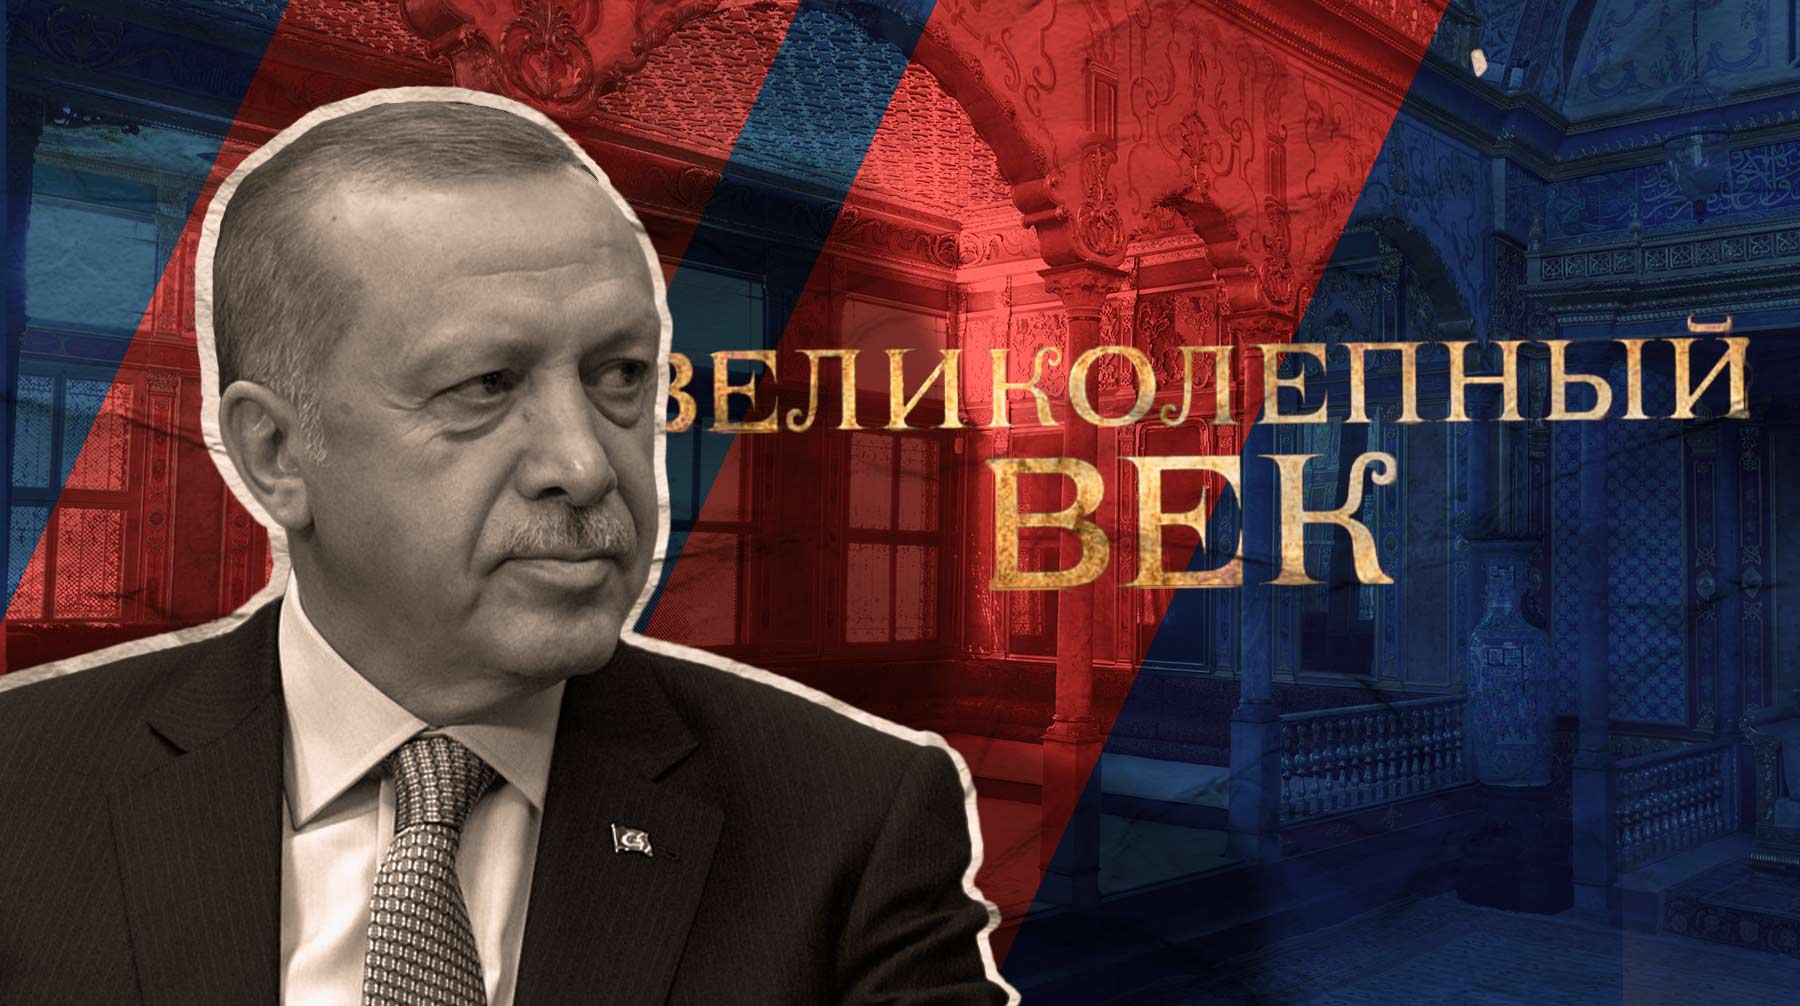 Основной каст «Великолепного века» и «Постучись в мою дверь» предпочел остаться в стороне от выборов в Турции